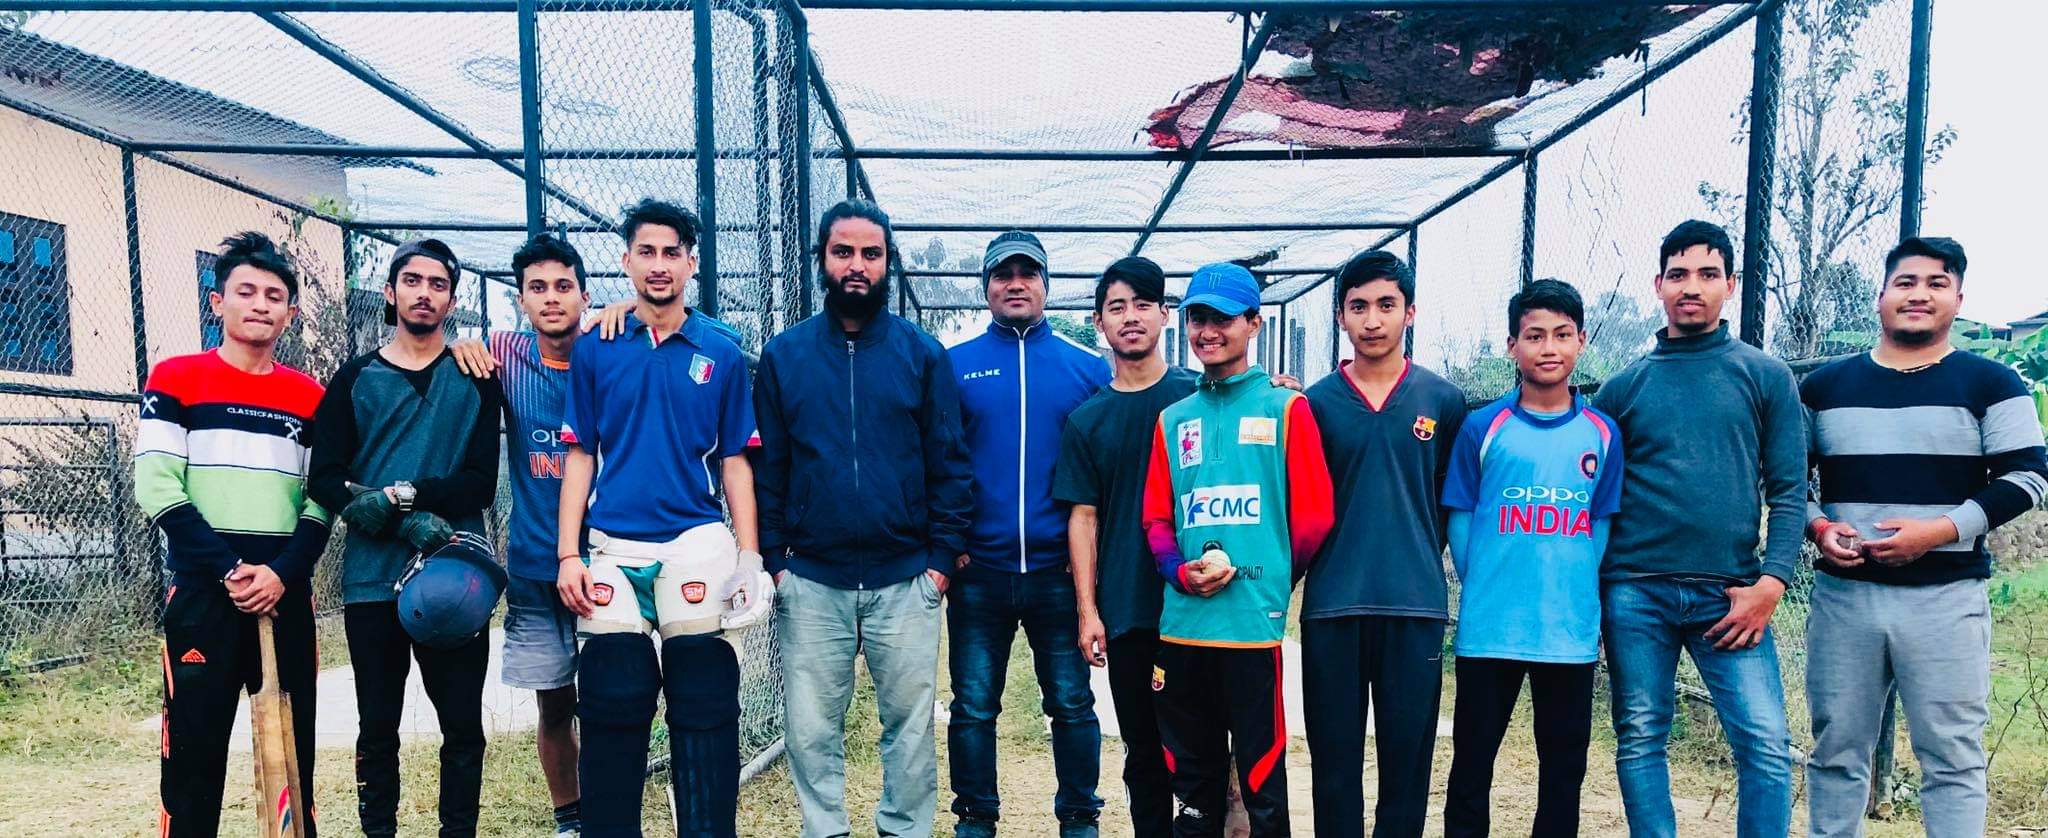 प्रधानमन्त्री कप क्रिकेट प्रतियोगिताको गण्डकी प्रदेश छनौटमा नवलपुरको विजयी सुरुवात